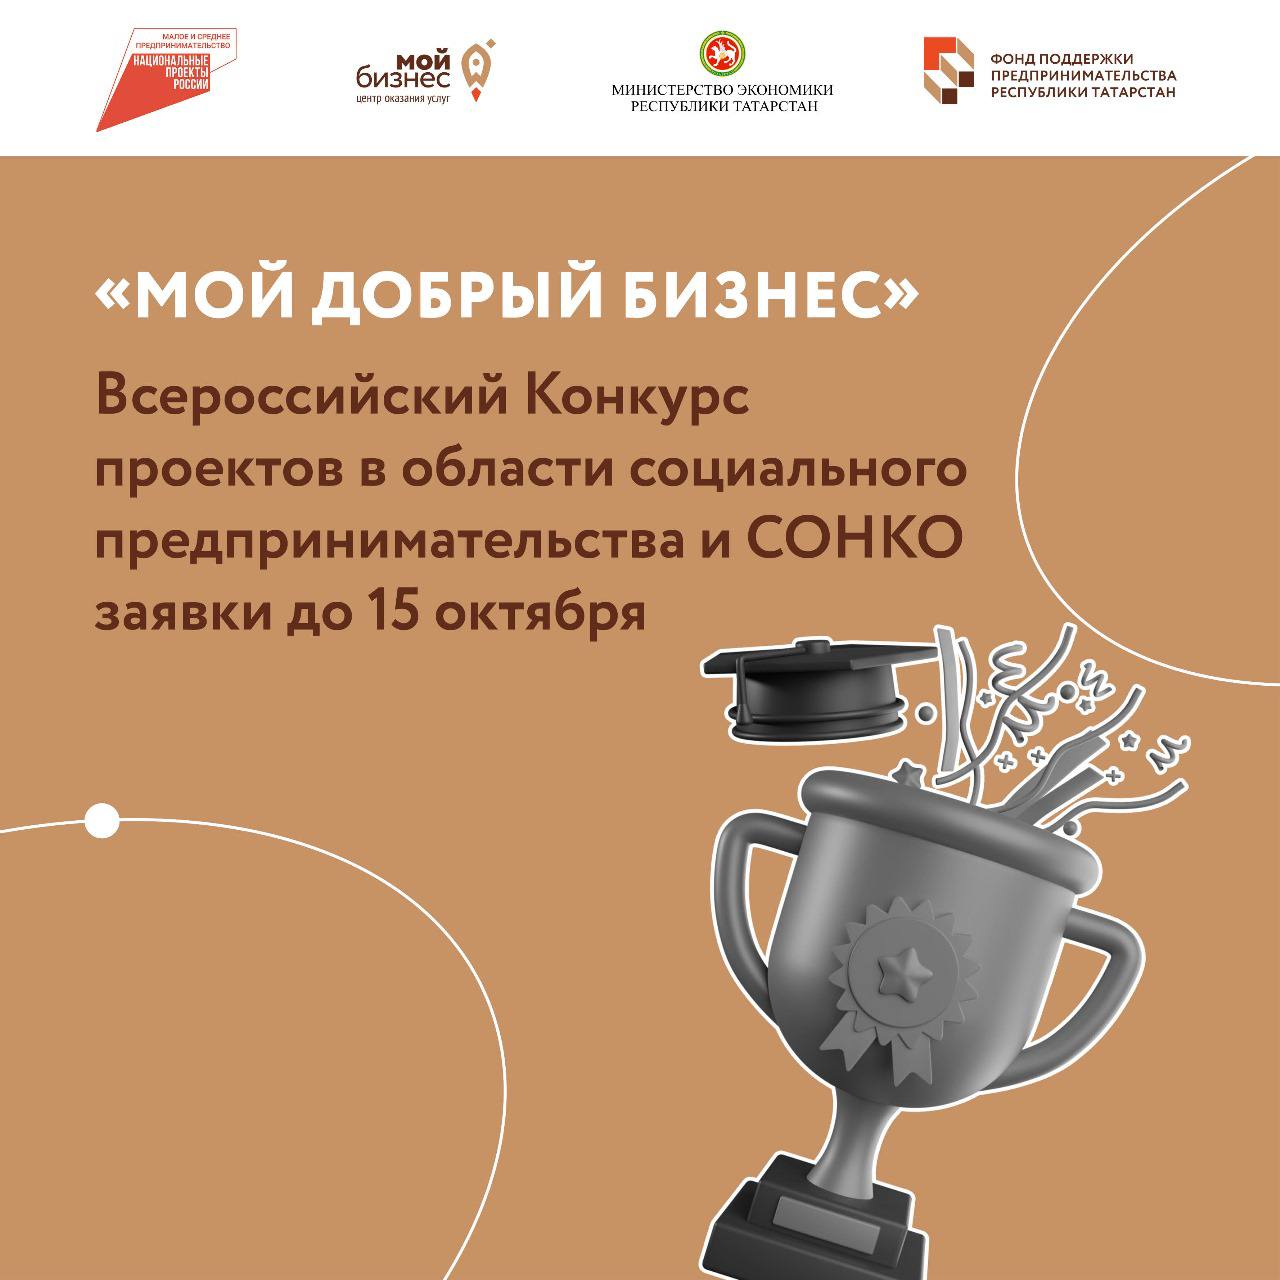 Продолжается прием заявок от татарстанских социальных предприятий на участие во Всероссийском конкурсе «Мой добрый бизнес».